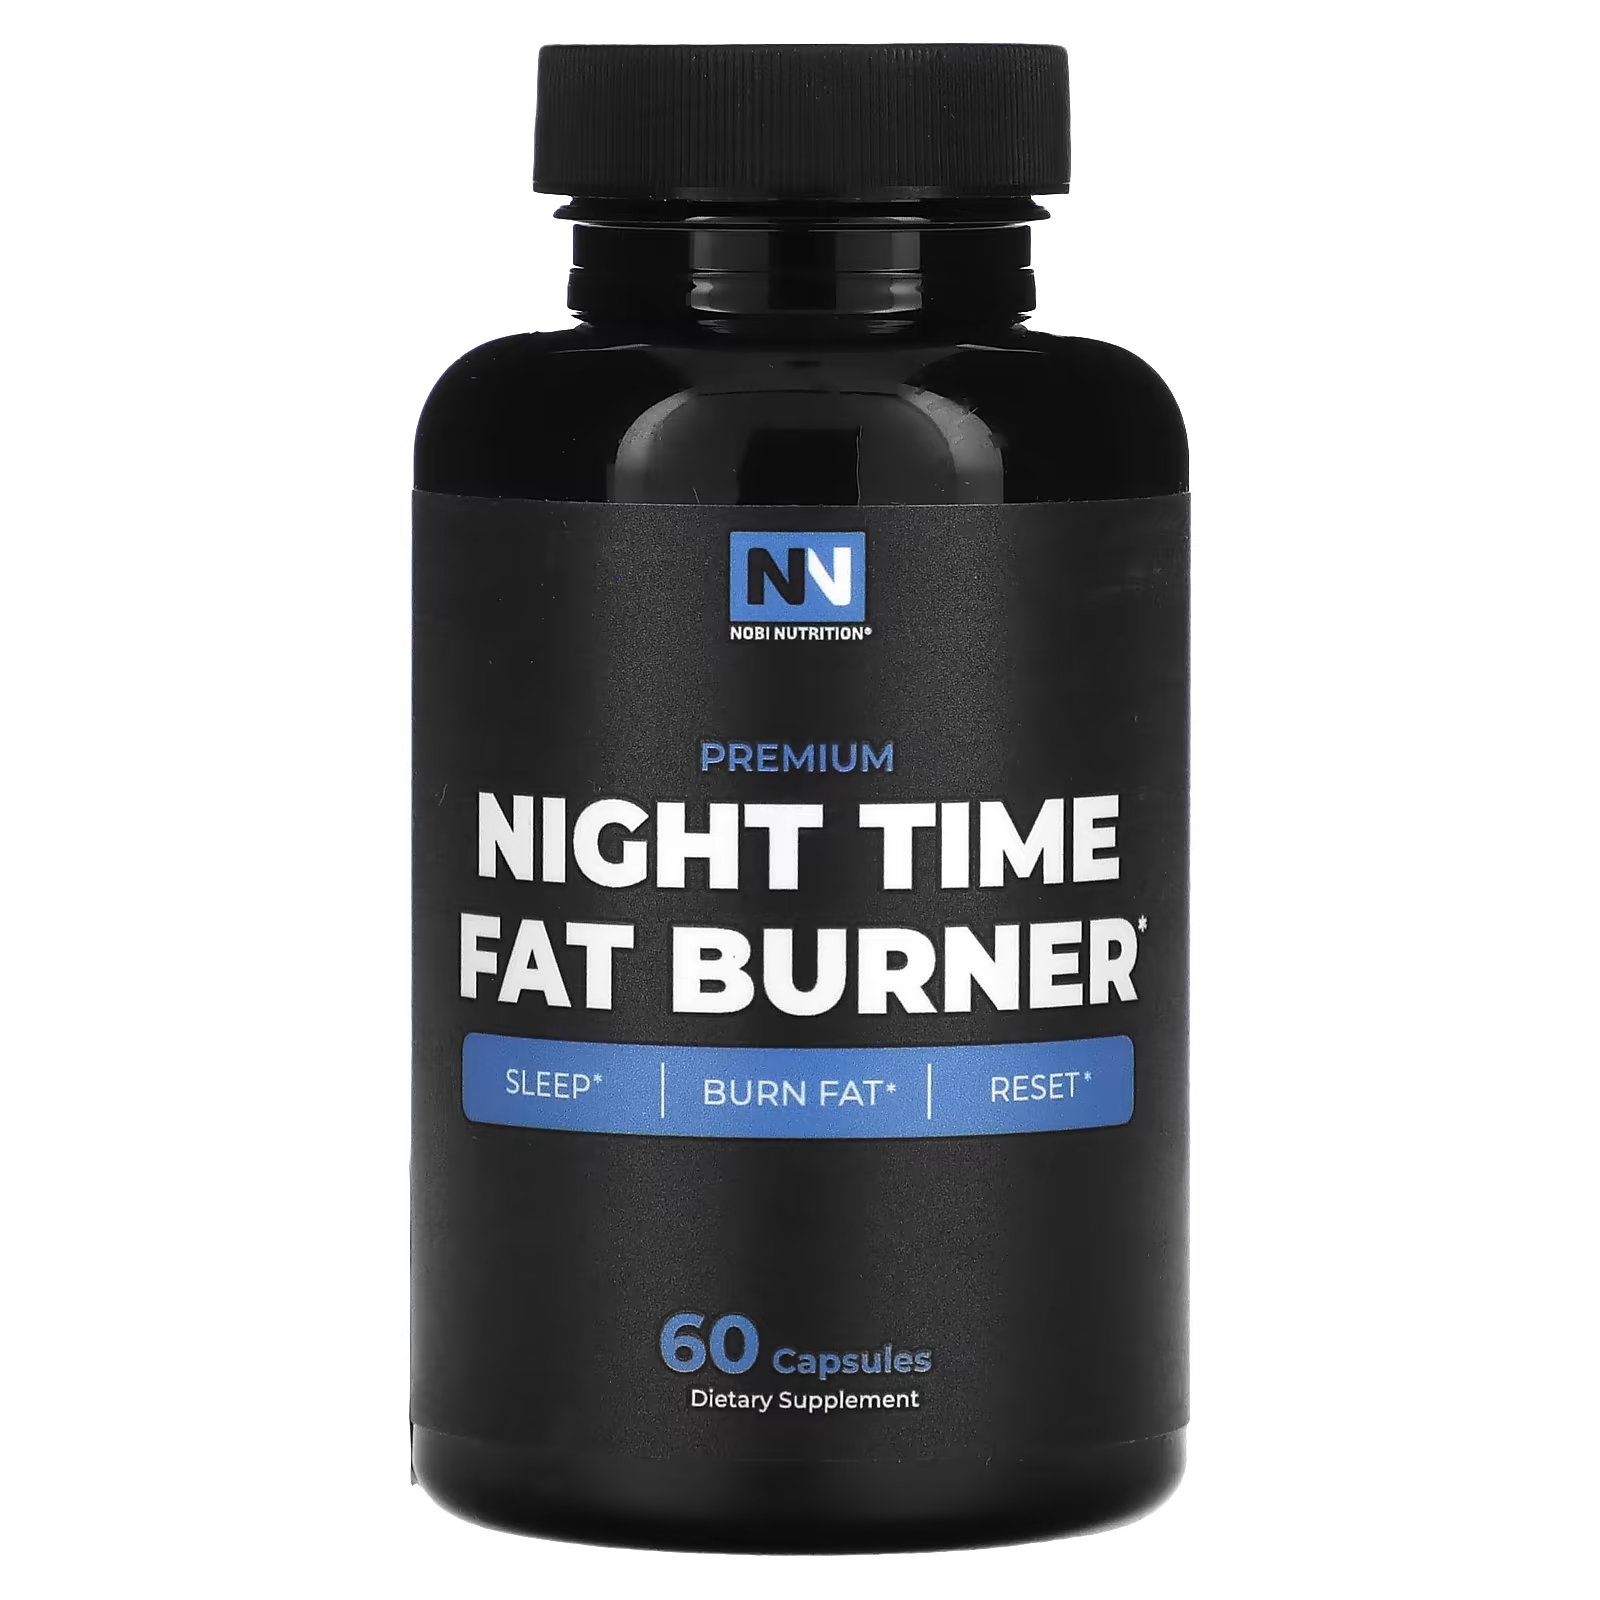 Nobi Nutrition Премиум средство для сжигания жира в ночное время, 60 капсул nobi nutrition усилитель тестостерона премиум класса 90 капсул